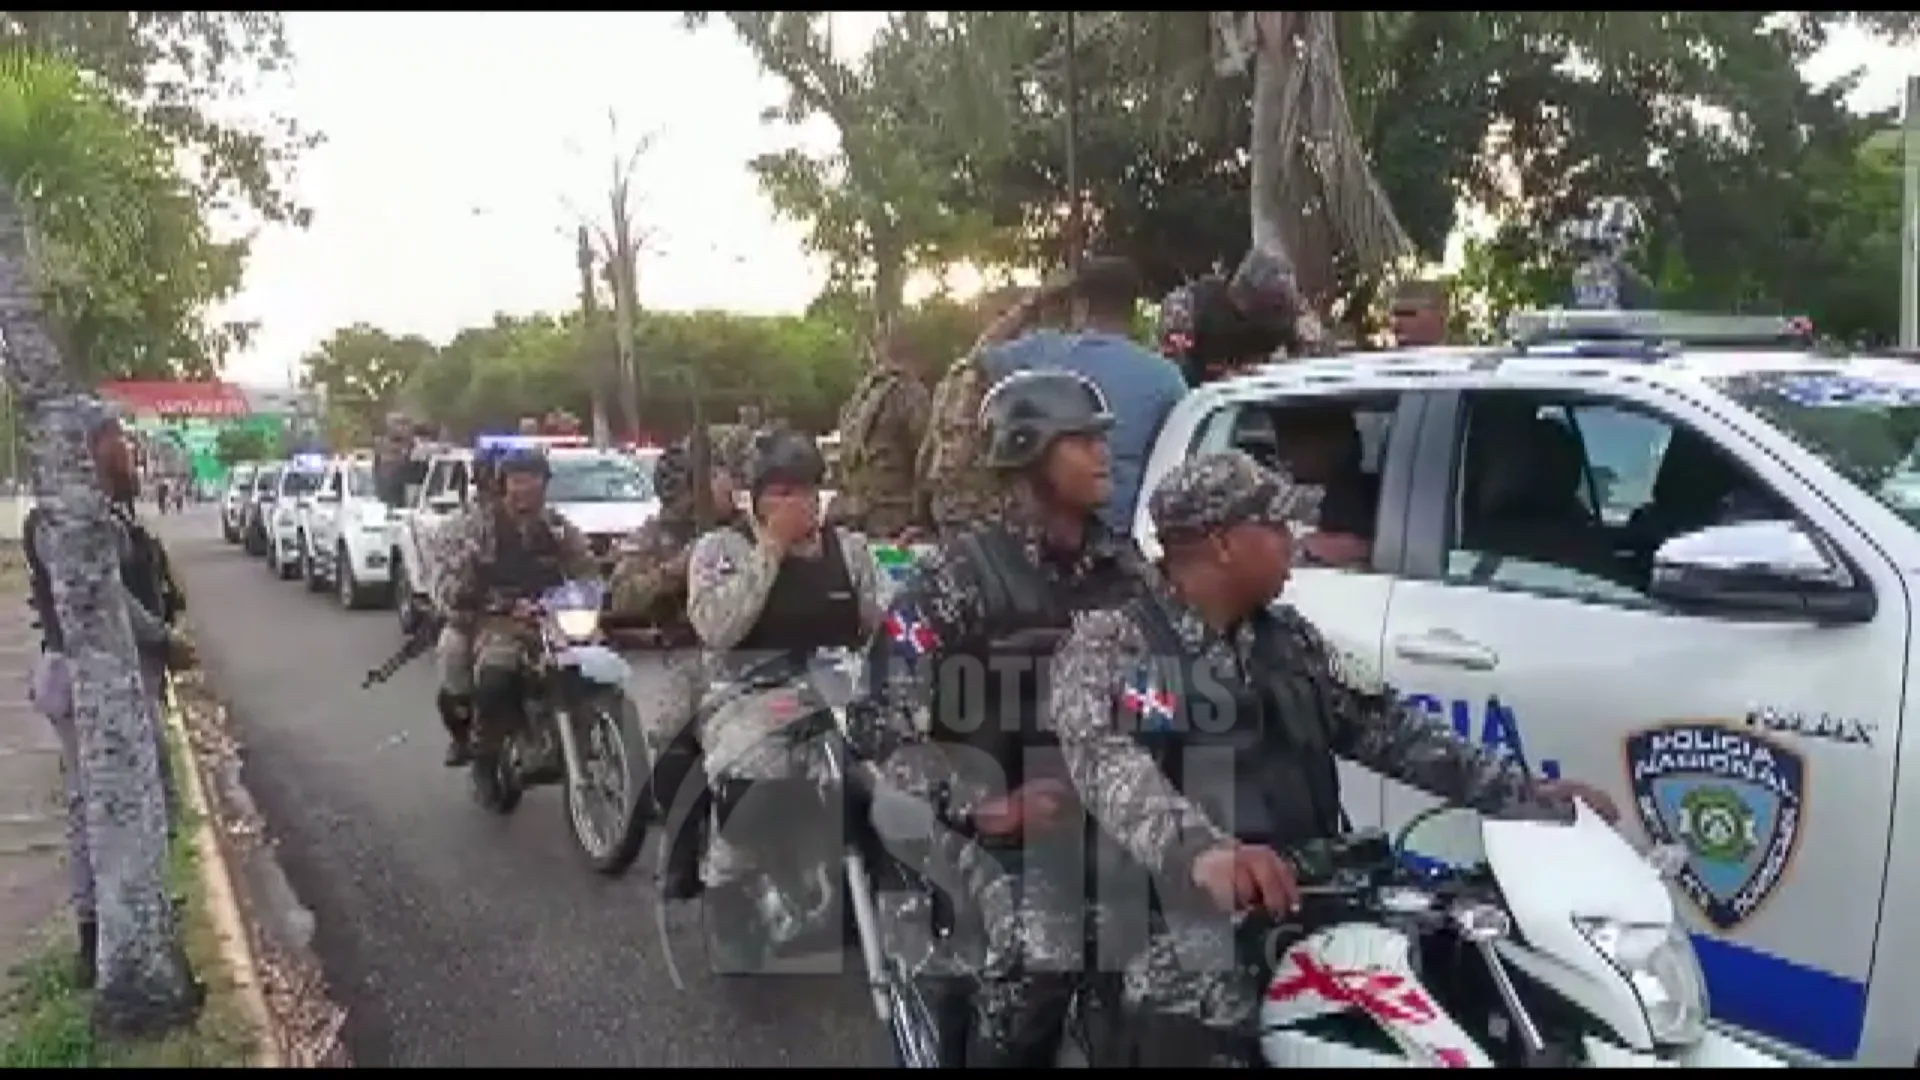 La Policía Nacional y las fuerzas militares recorrieron barrios de la zona norte de la capital manteniendo vigilancia